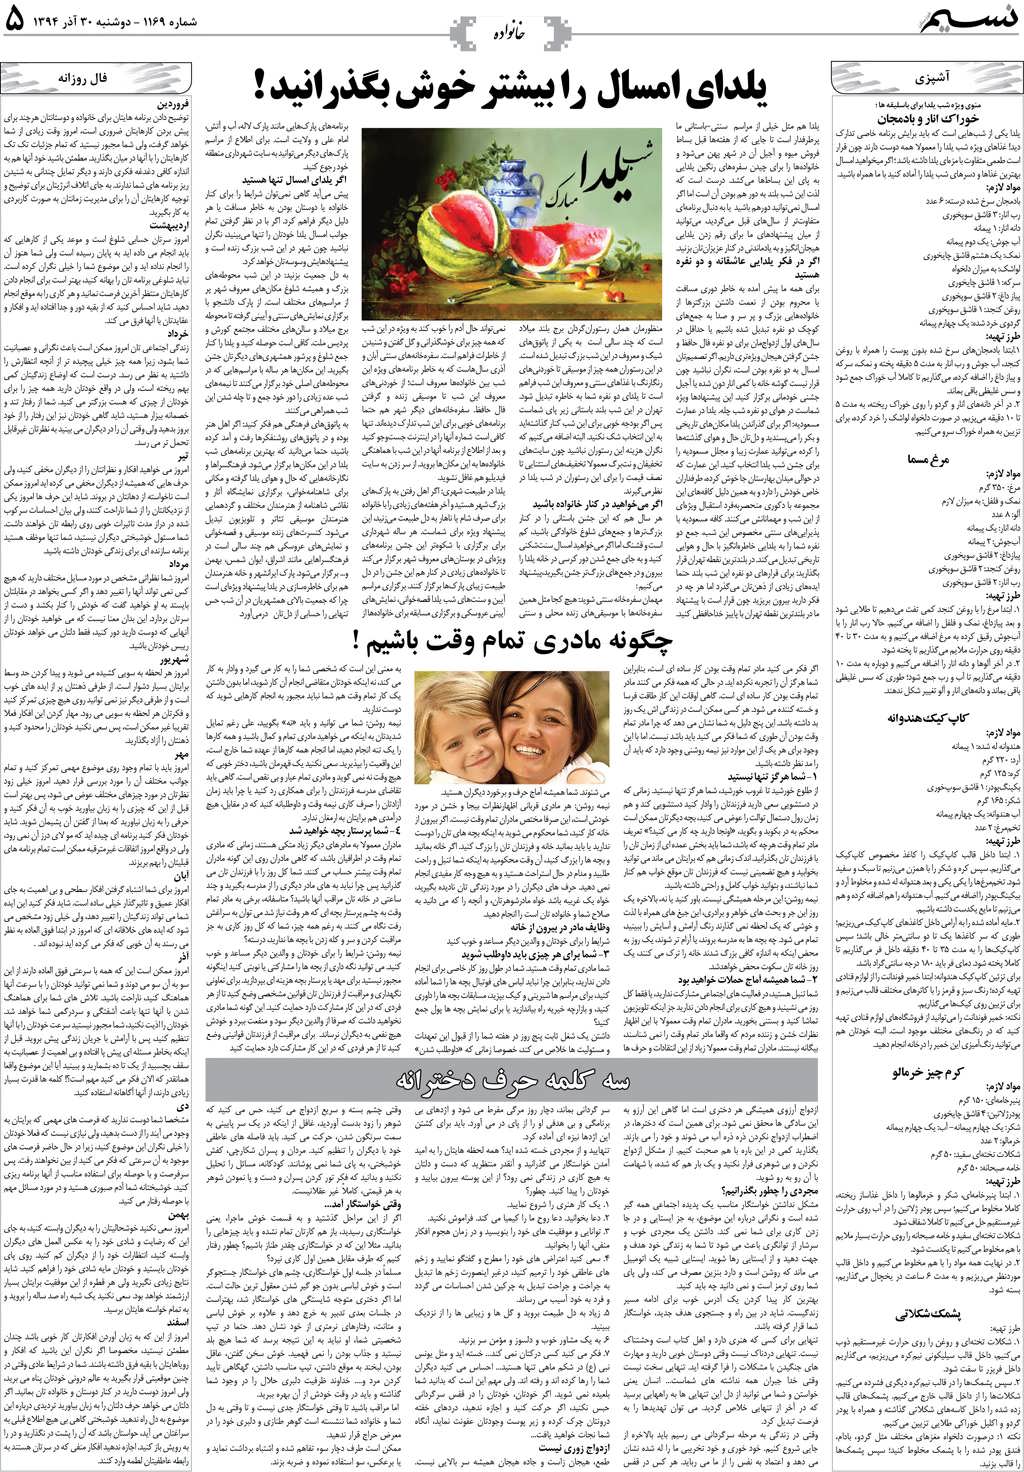 صفحه خانواده روزنامه نسیم شماره 1169